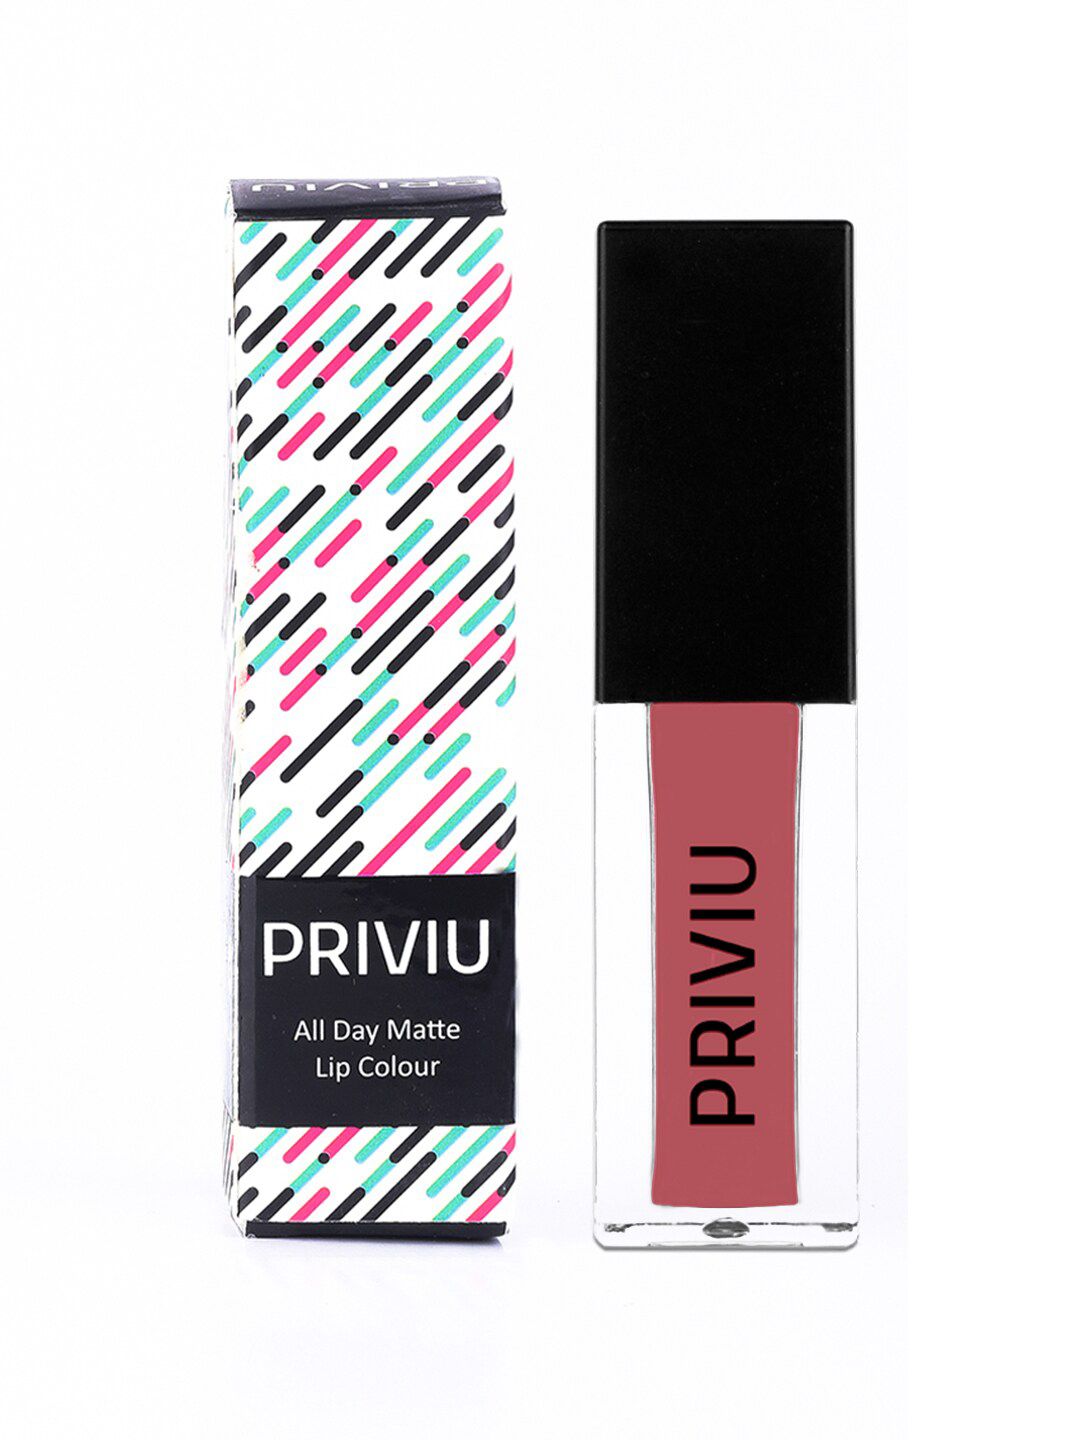 PRIVIU All Day Matte Liquid Lipstick- Peachy Blush Price in India